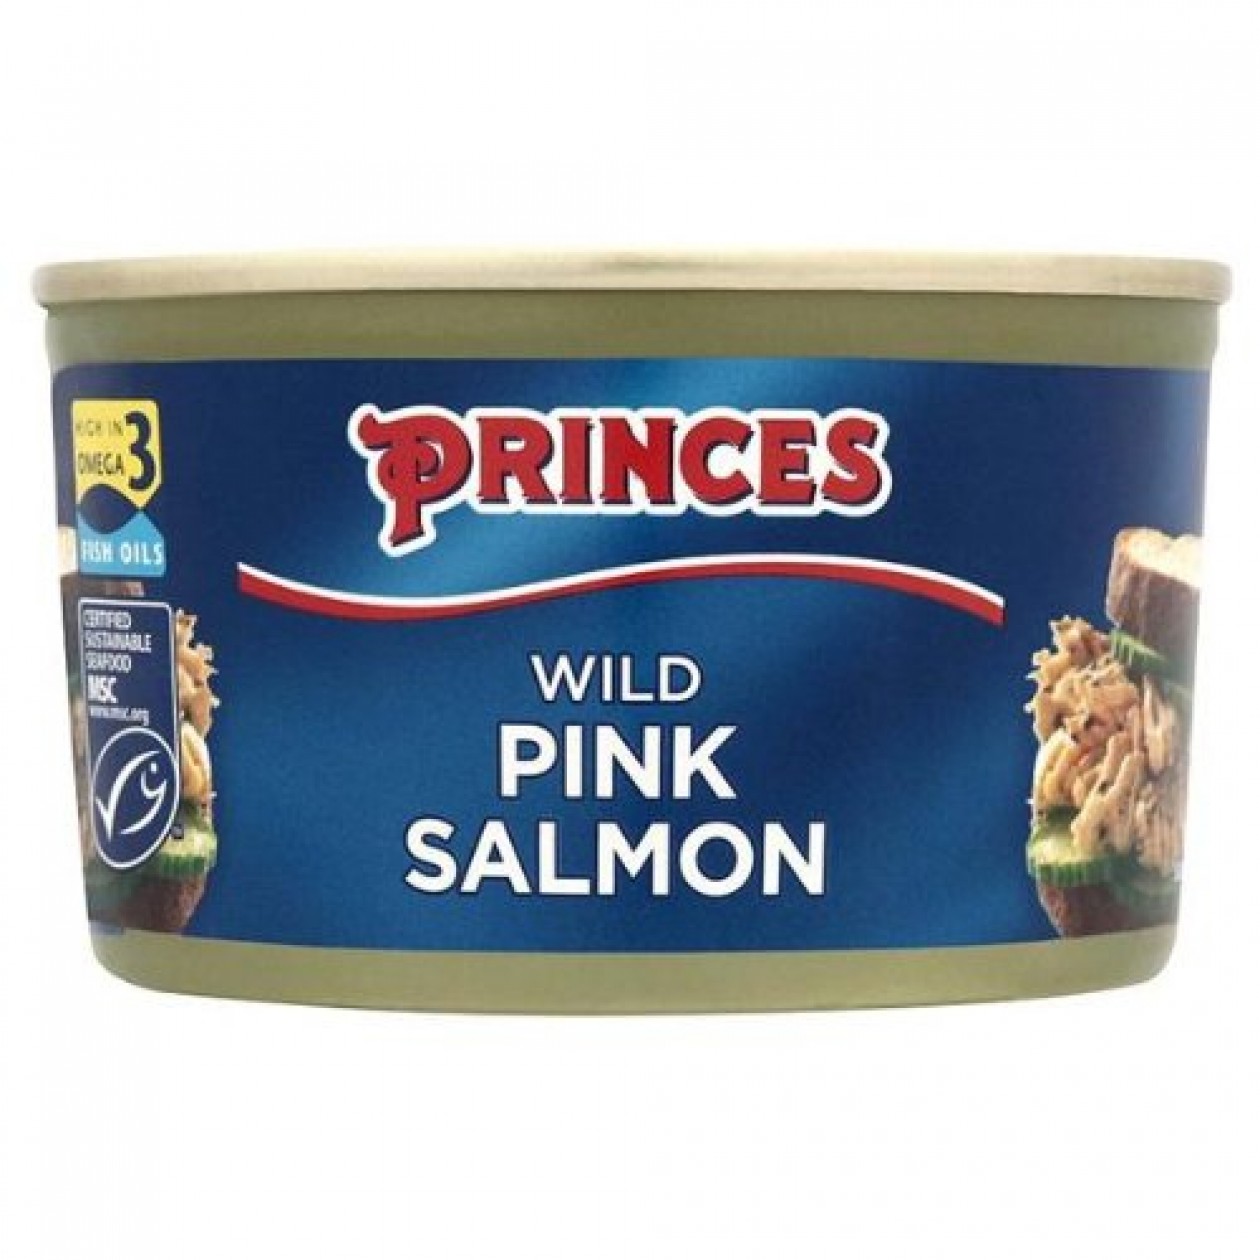 Princes Pink Salmon 6 x 213g